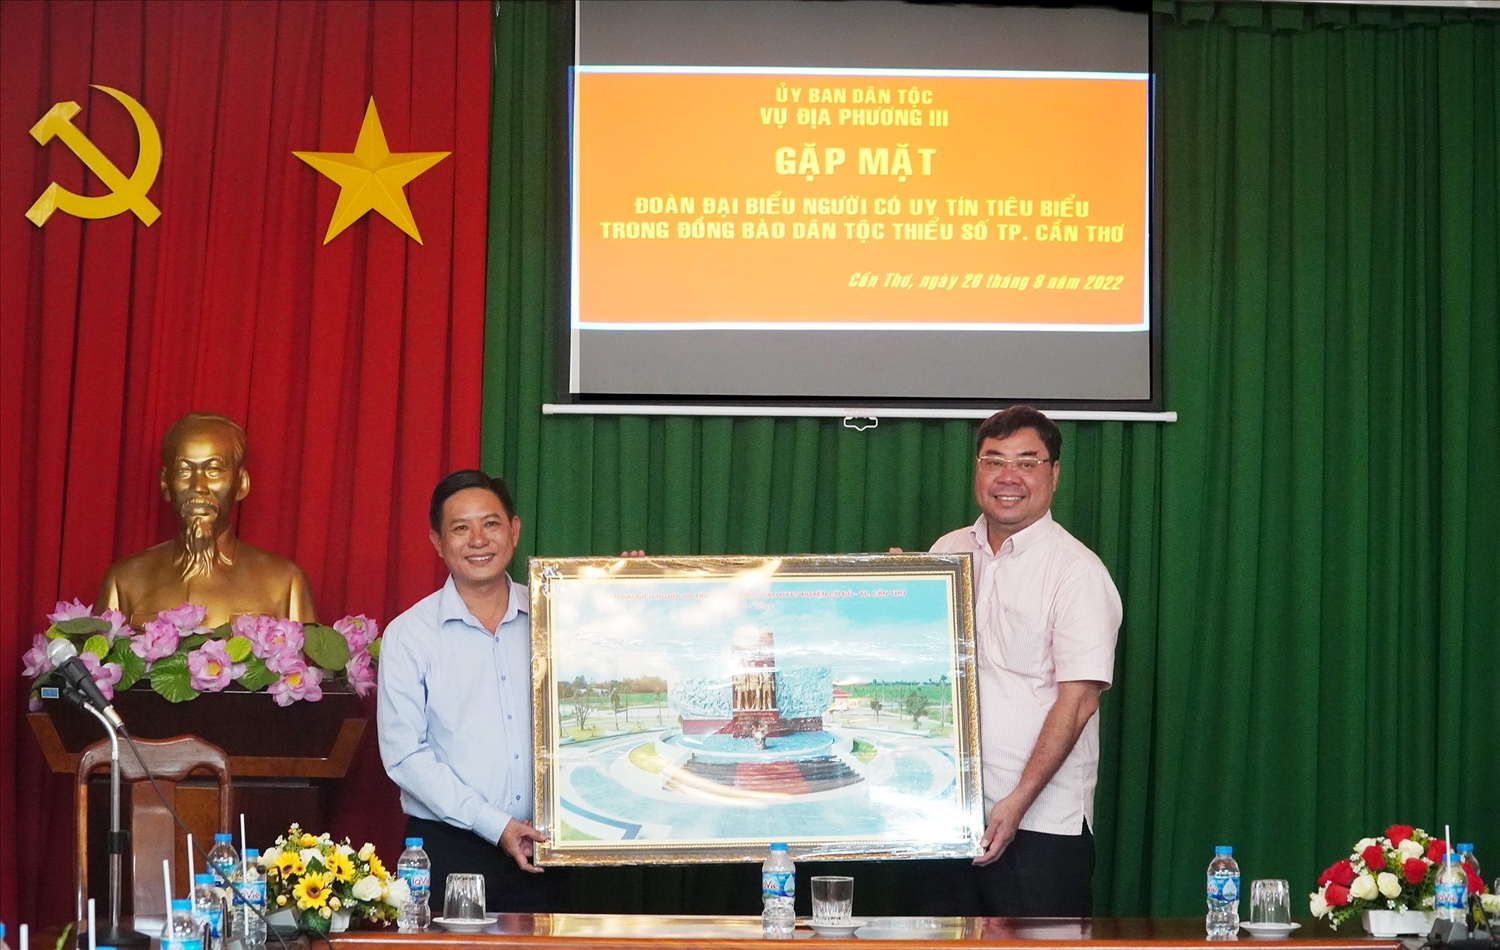 Ông Trần Tuấn Việt thay mặt Đoàn trao quà cho Vụ Địa phương III